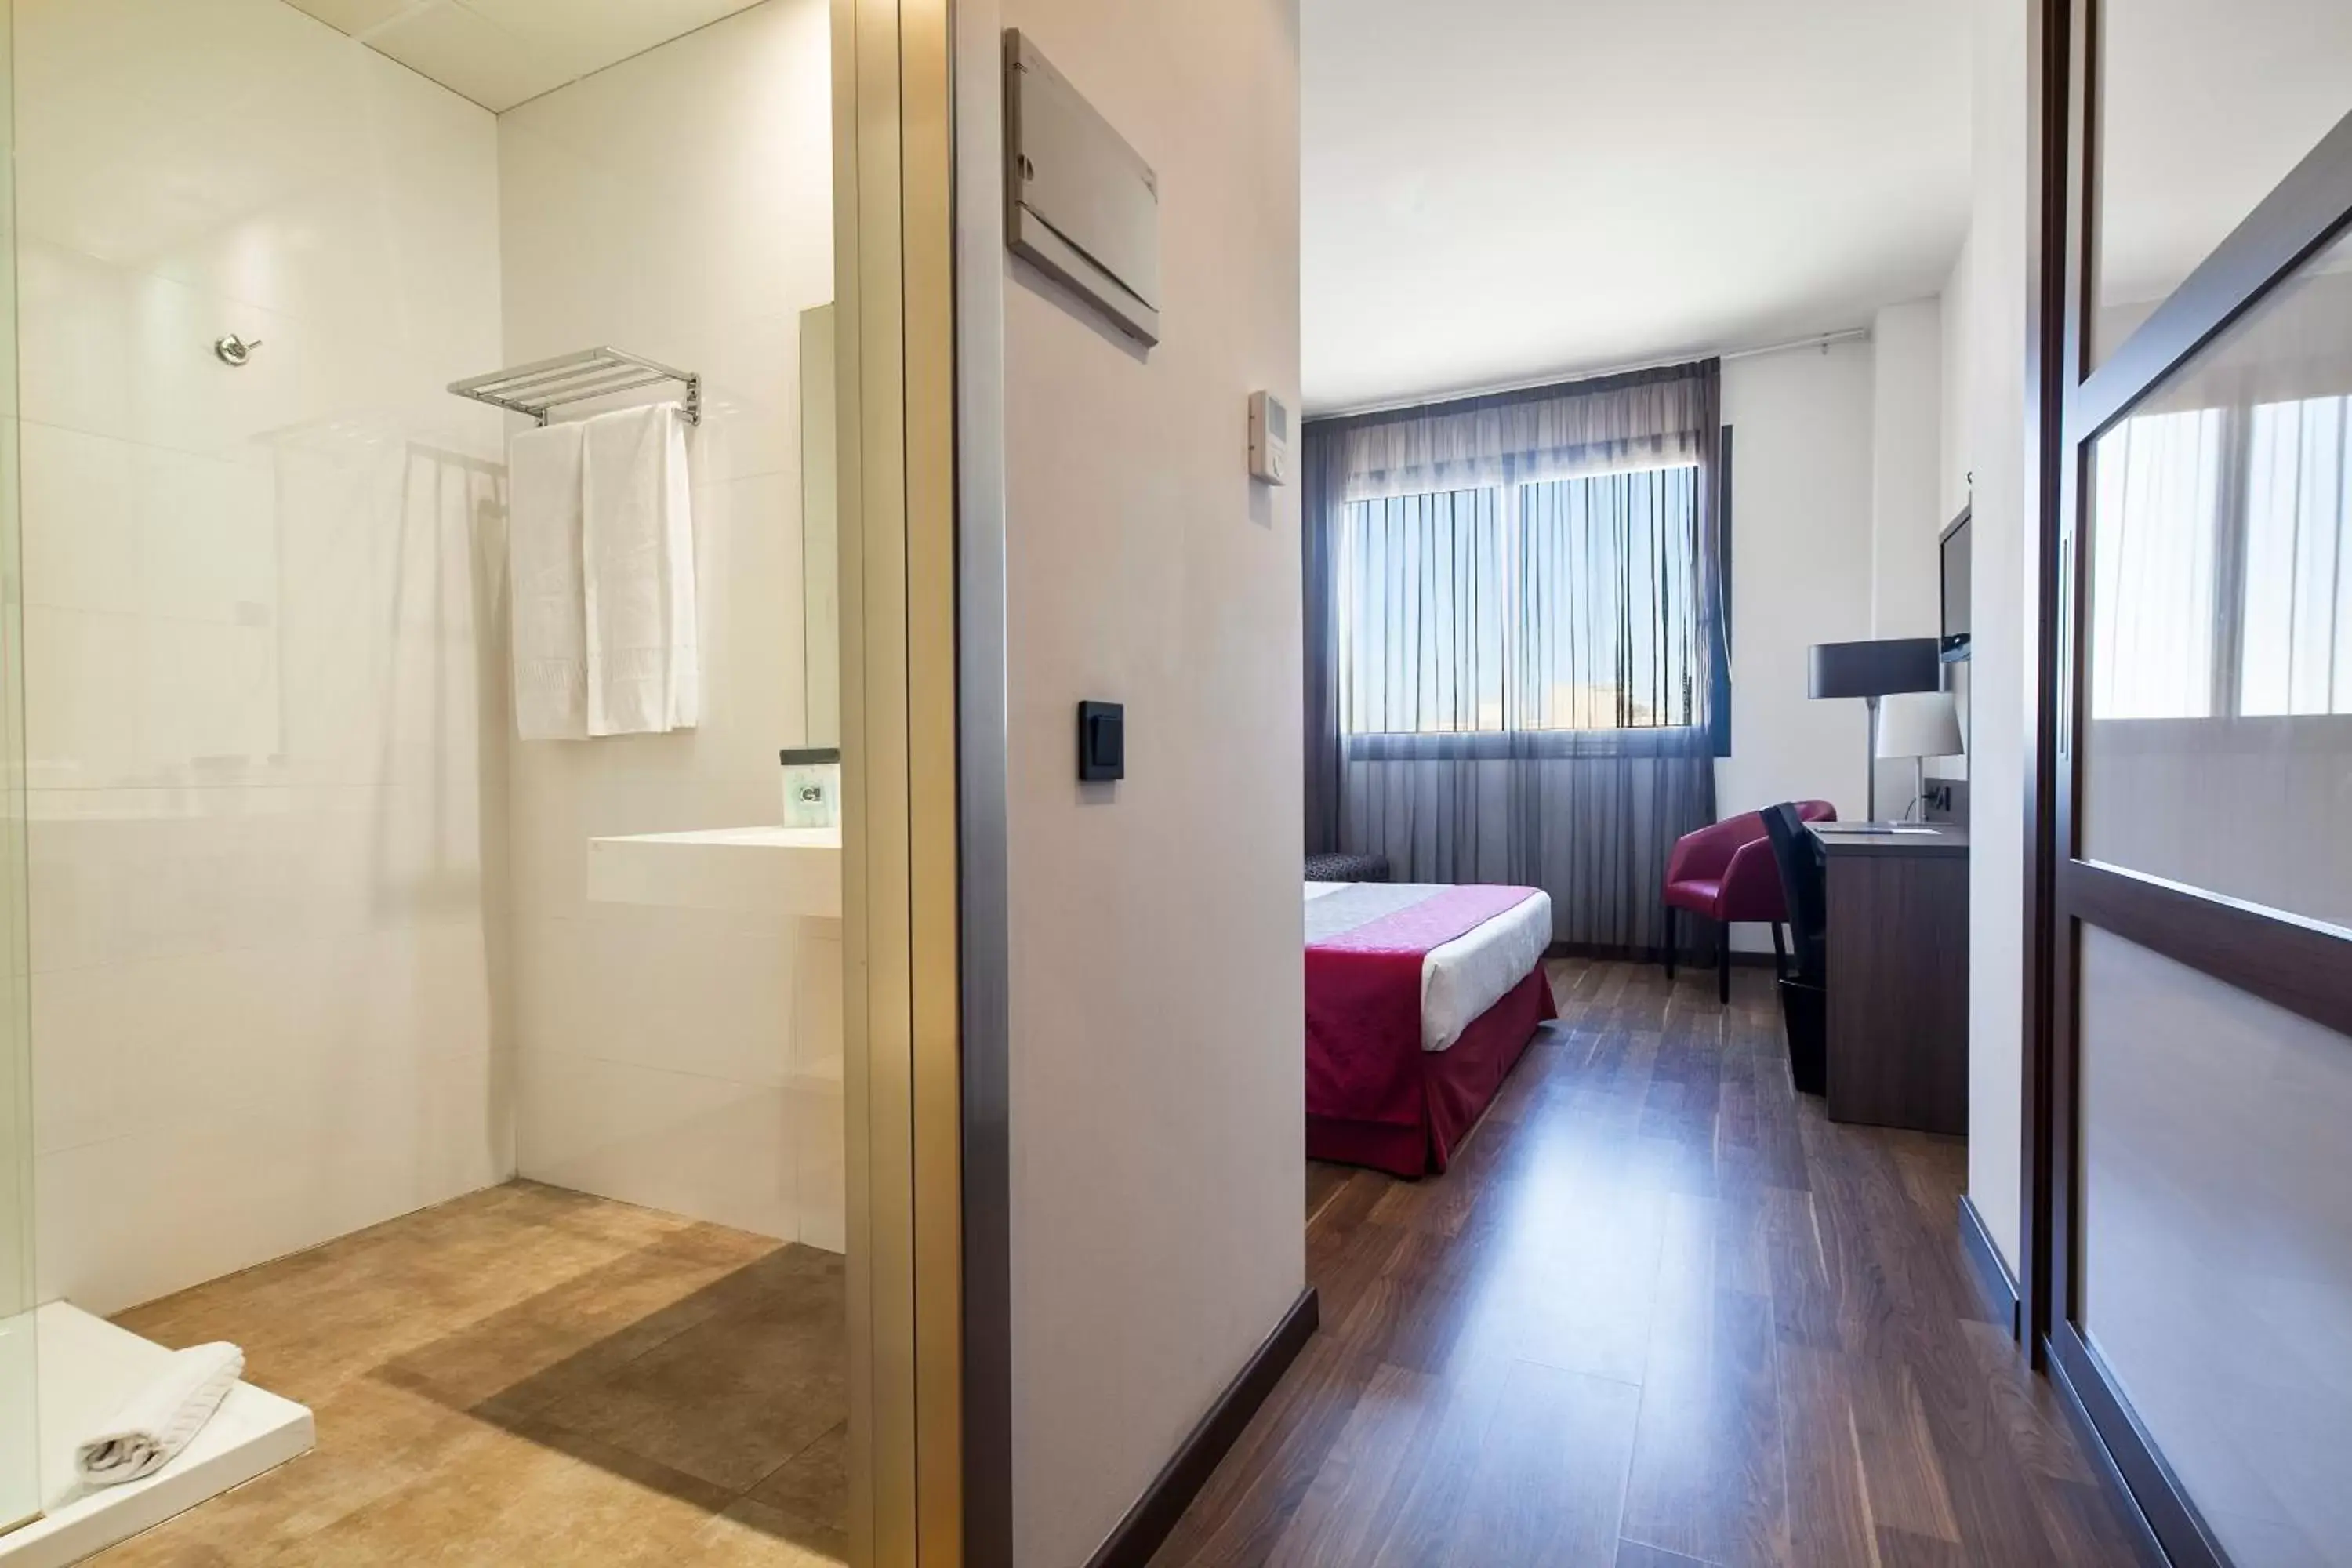 Bedroom, Bathroom in Hotel Best 4 Barcelona